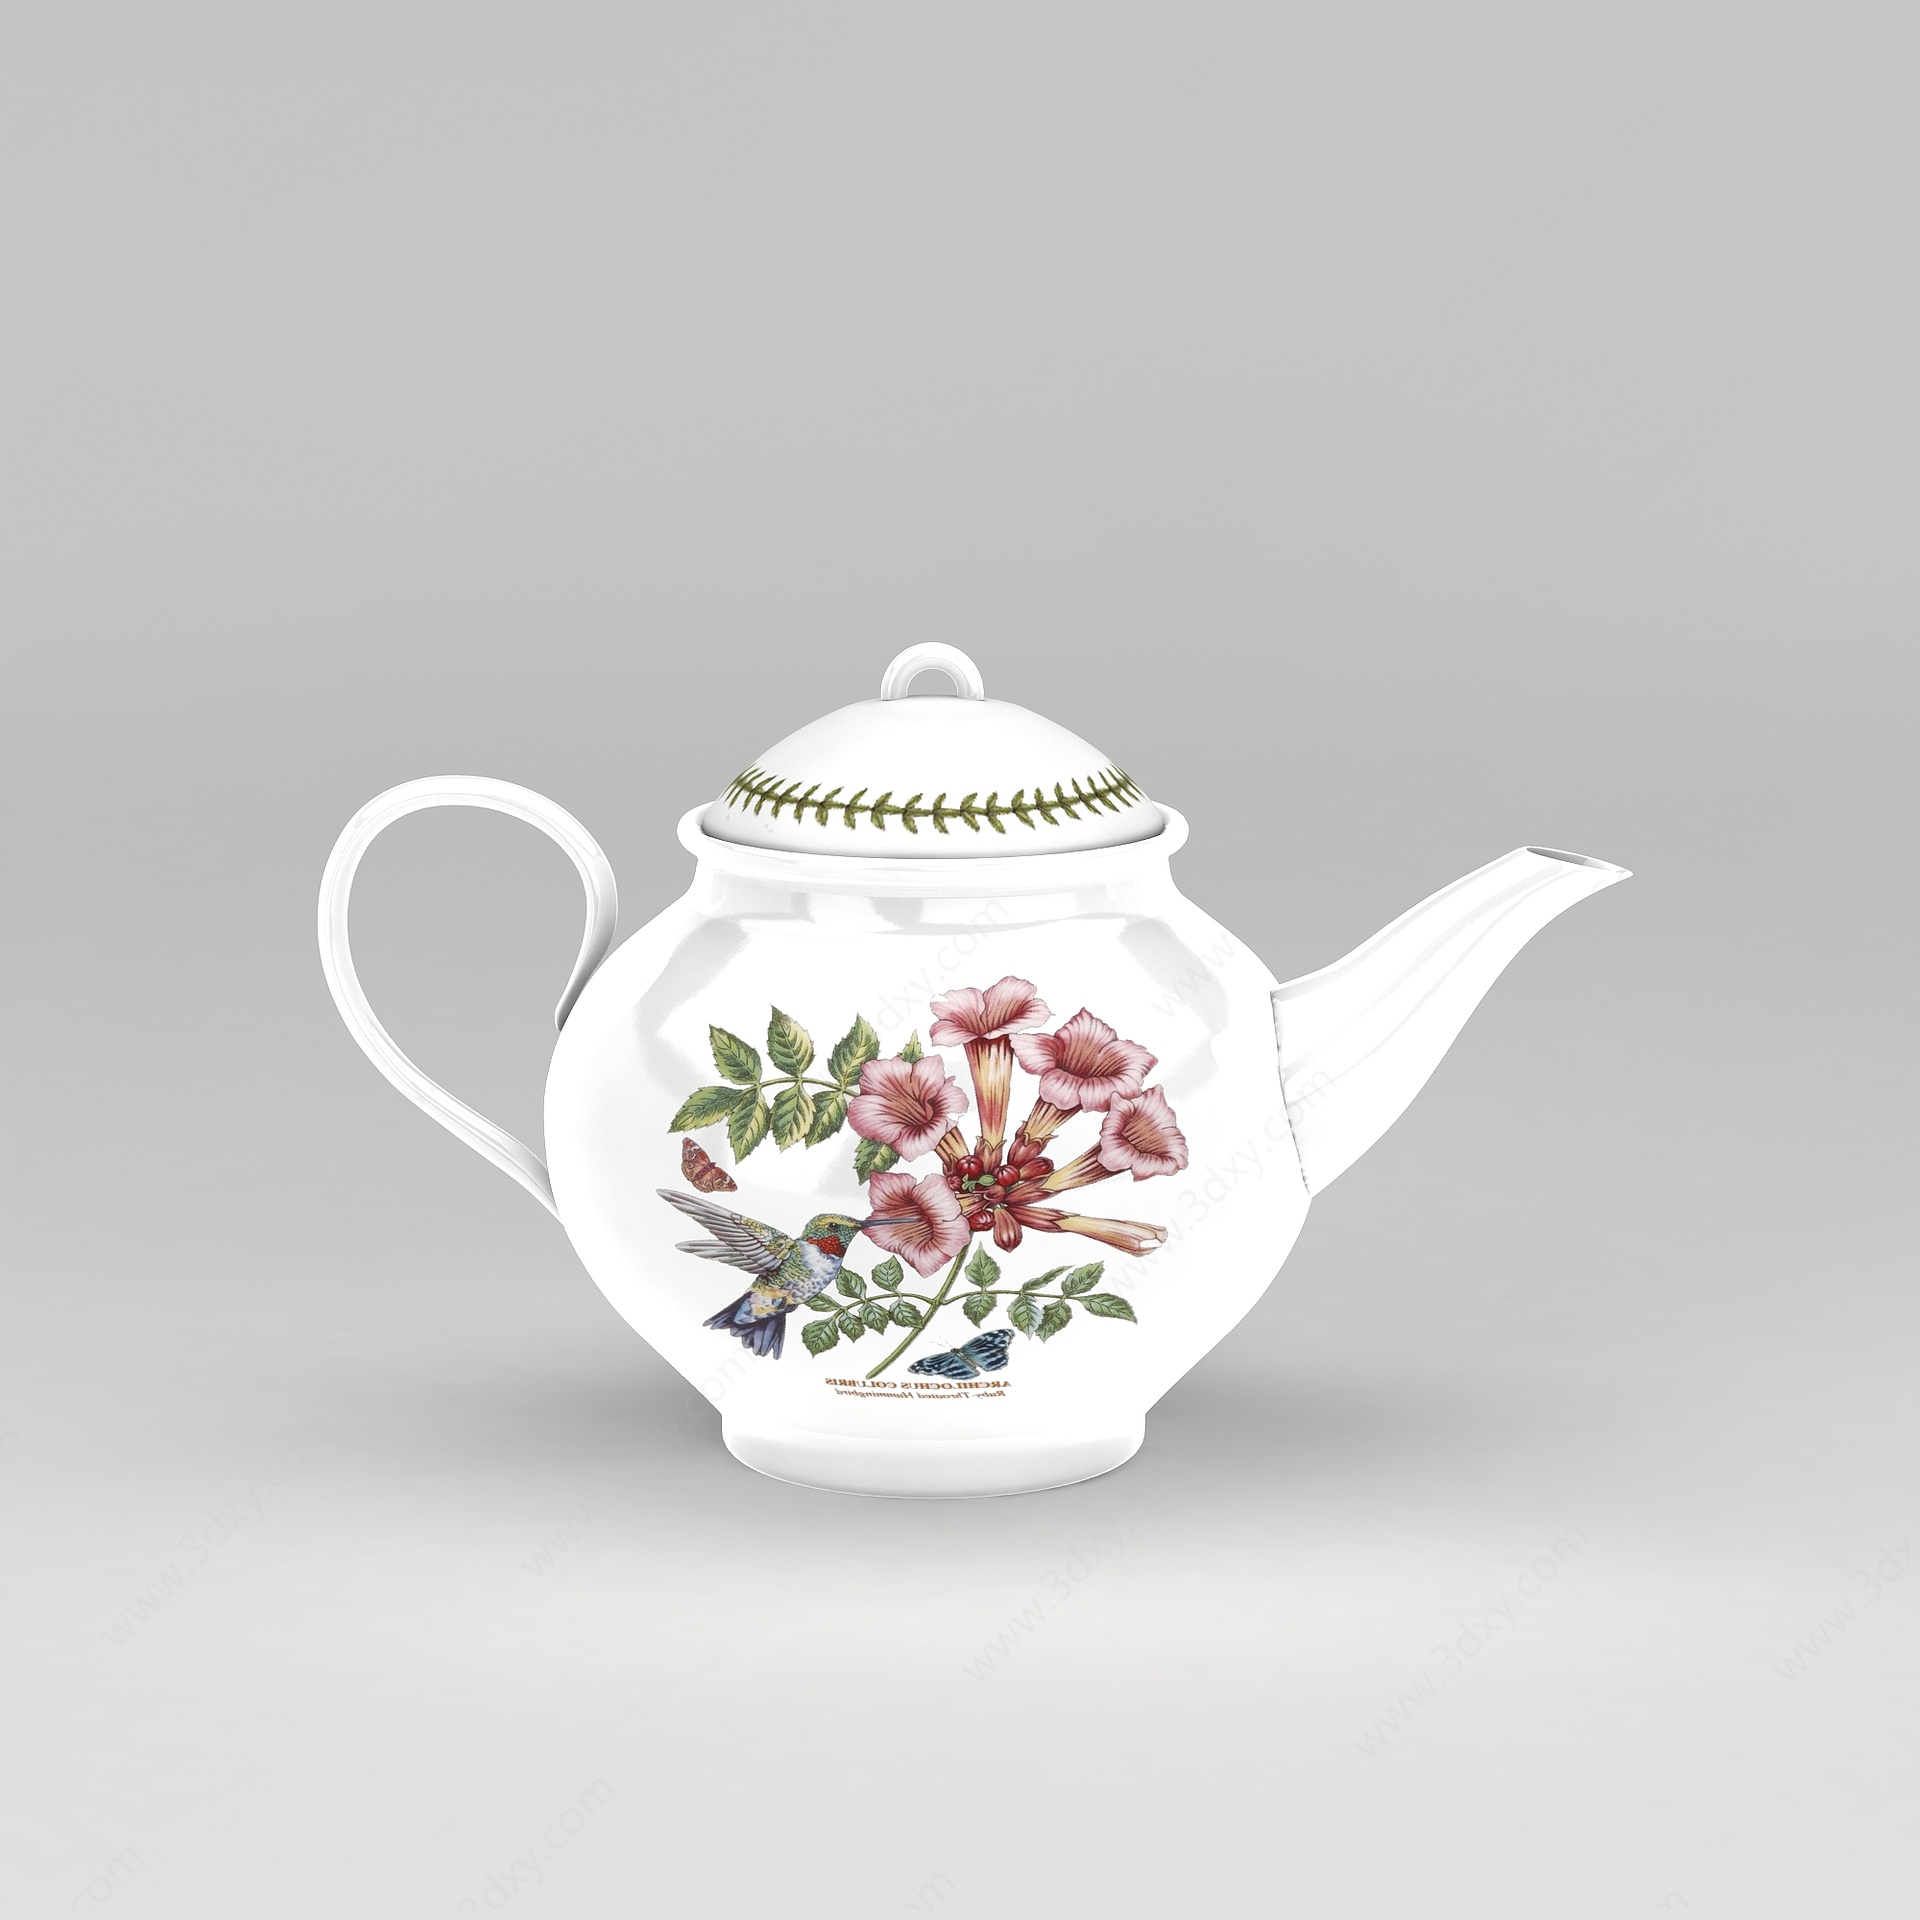 中式印花陶瓷茶壶摆件3D模型